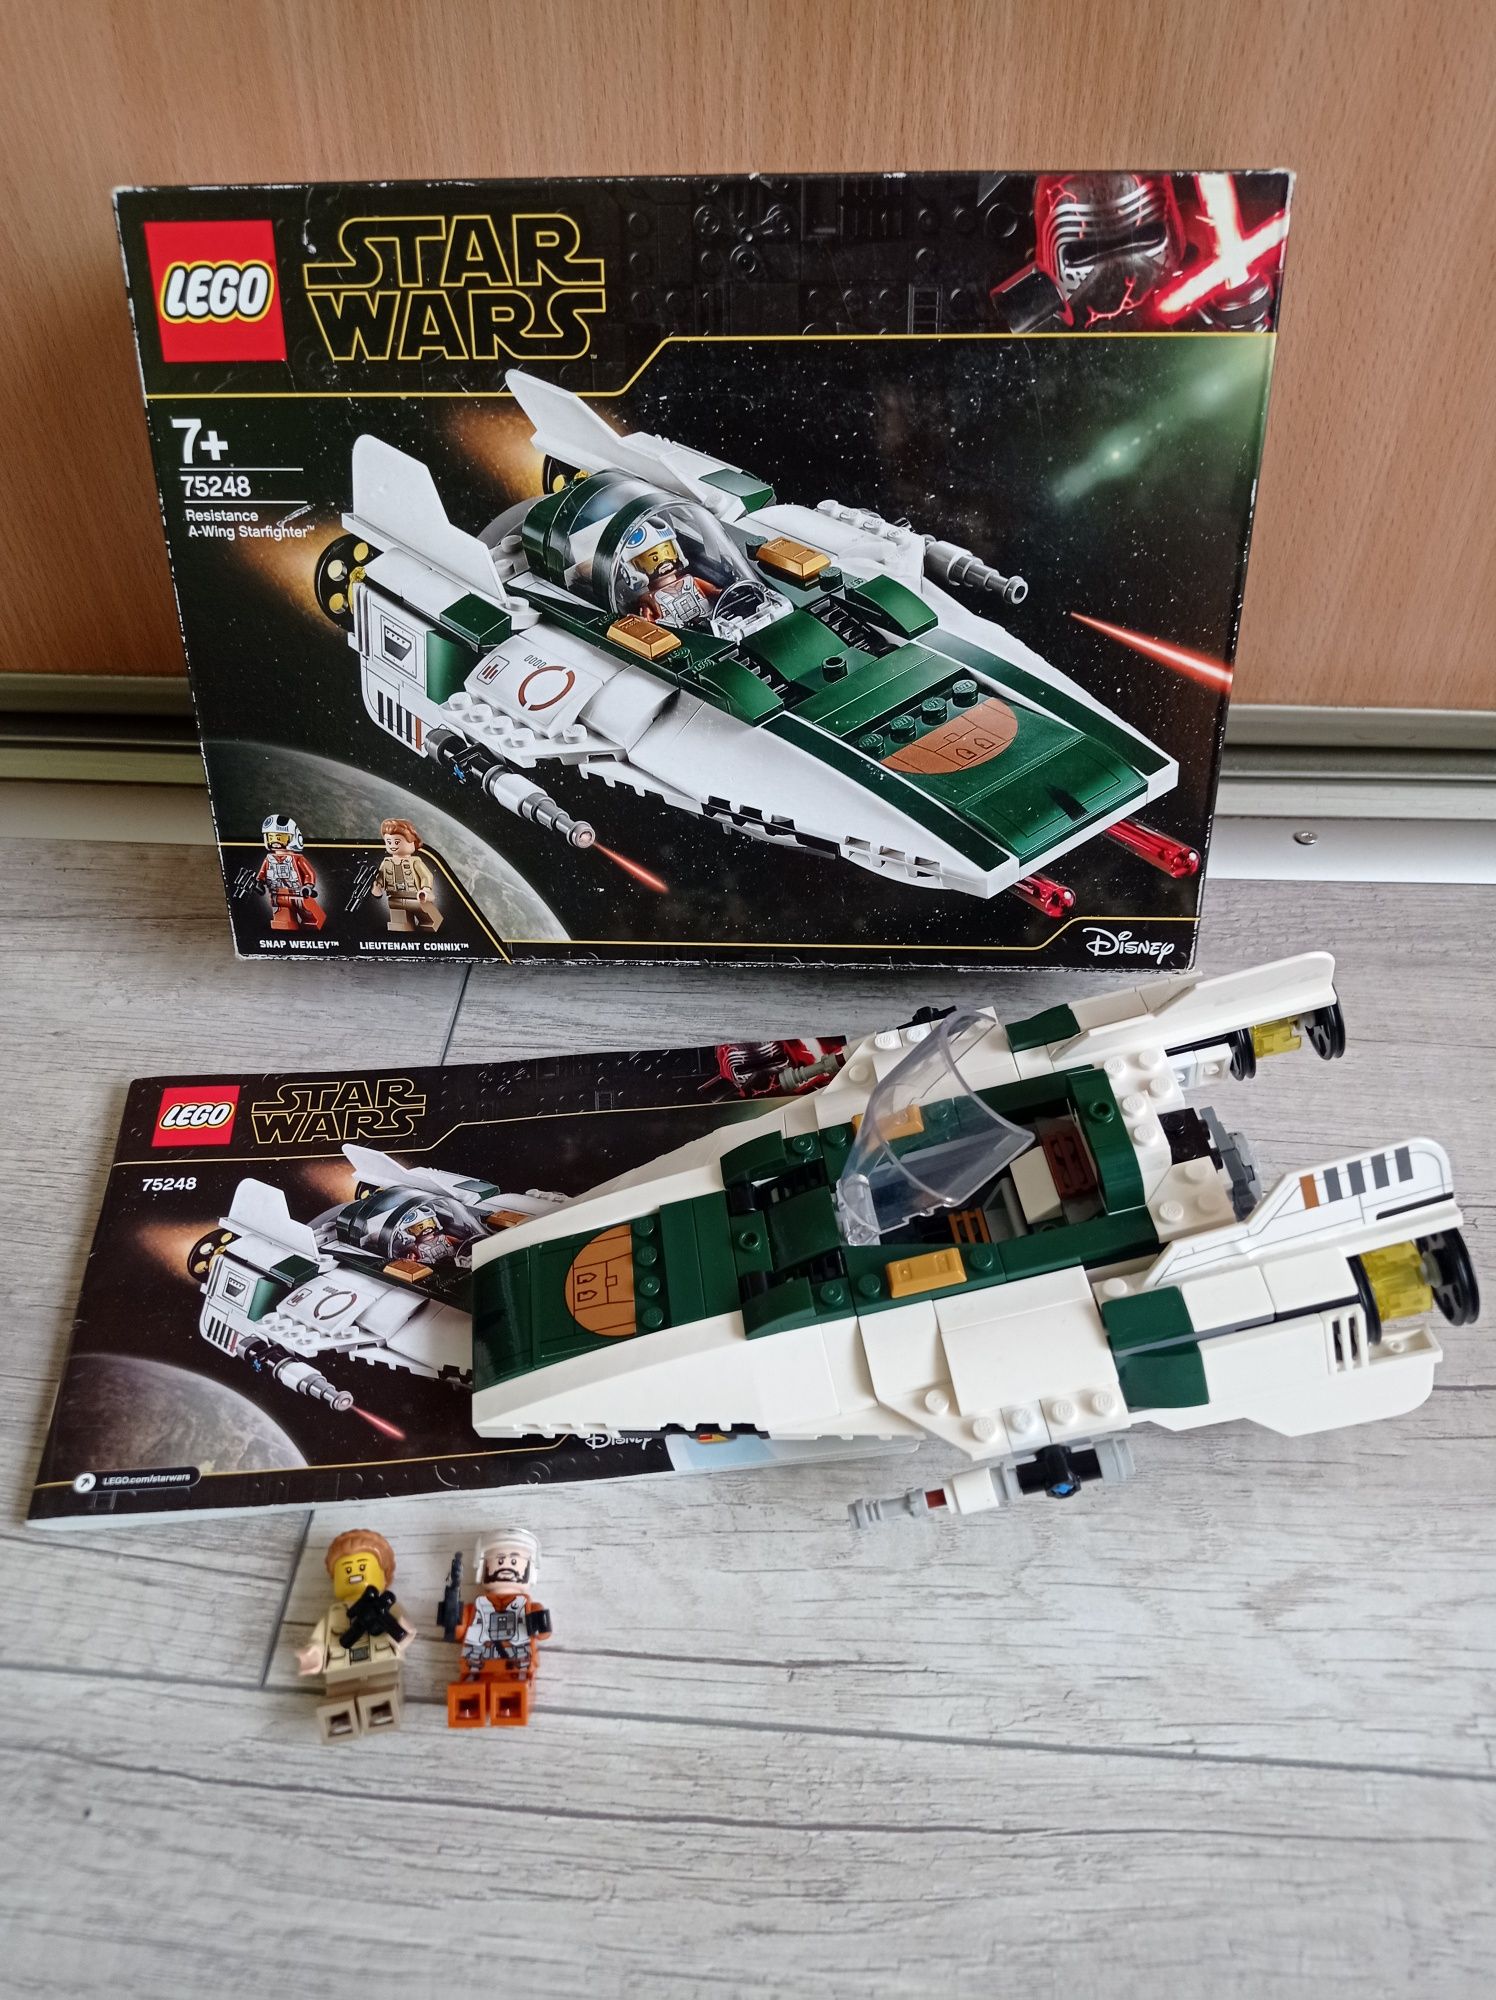 LEGO Star wars 7+ model 75248